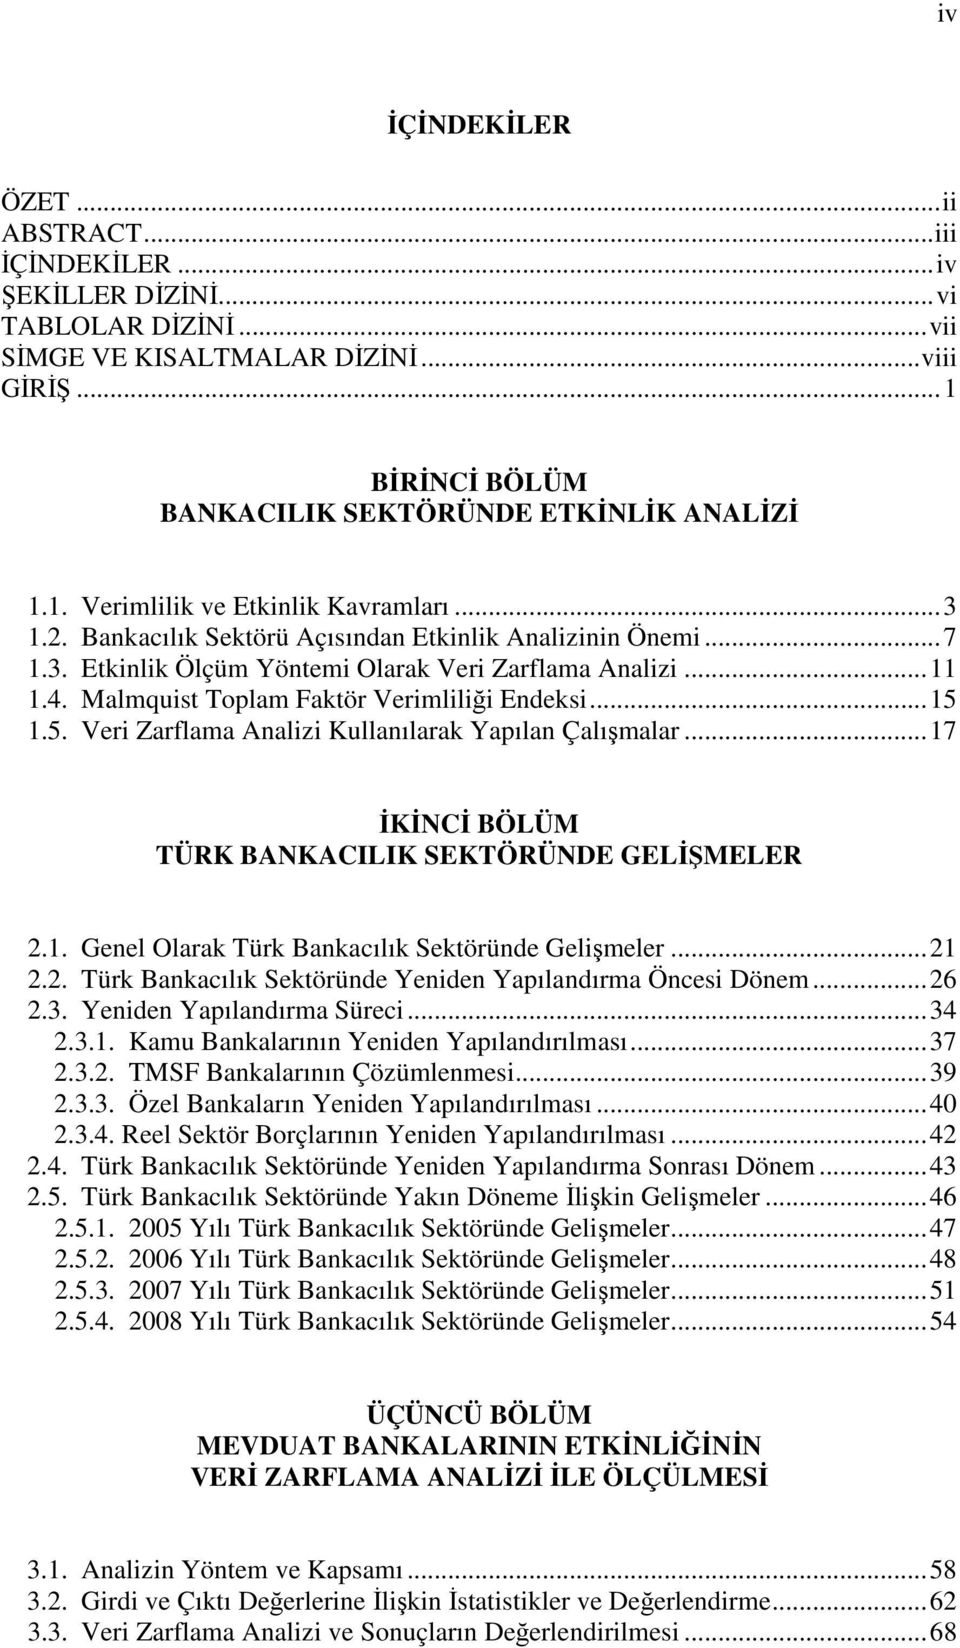 Malmquist Toplam Faktör Verimliliği Endeksi...15 1.5. Veri Zarflama Analizi Kullanılarak Yapılan Çalışmalar...17 İKİNCİ BÖLÜM TÜRK BANKACILIK SEKTÖRÜNDE GELİŞMELER 2.1. Genel Olarak Türk Bankacılık Sektöründe Gelişmeler.